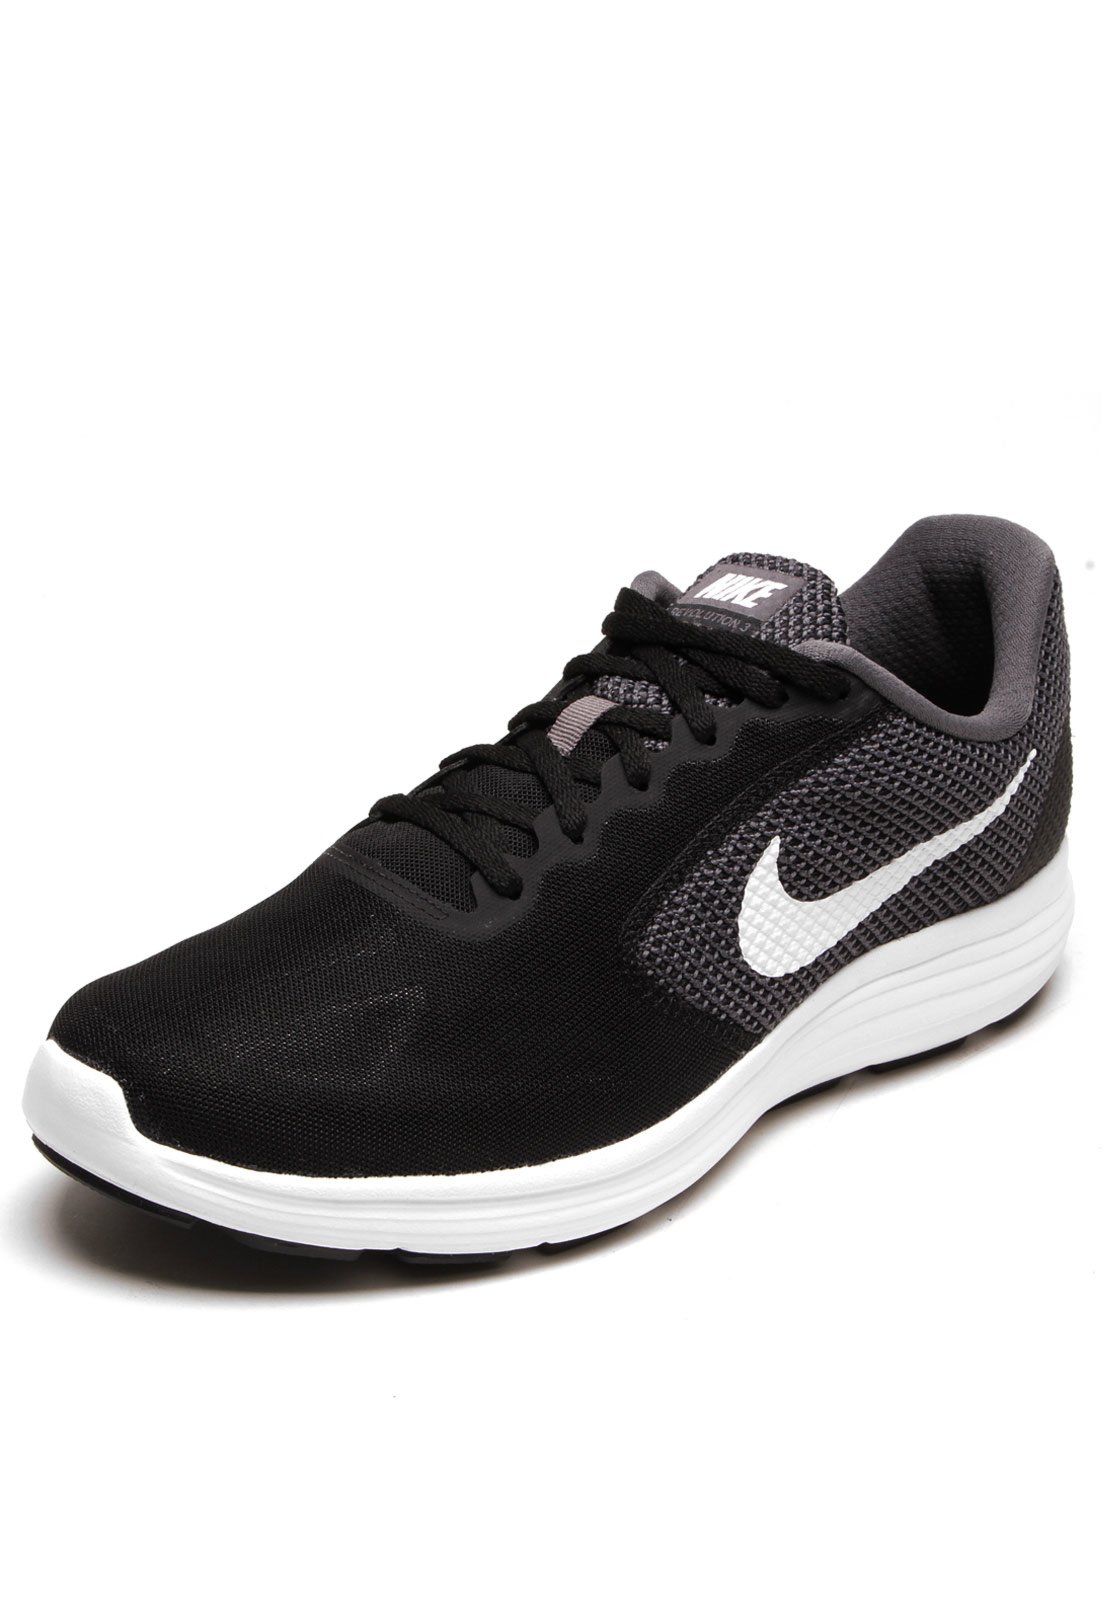 Tênis Nike Revolution 3 Preto - Compre Agora